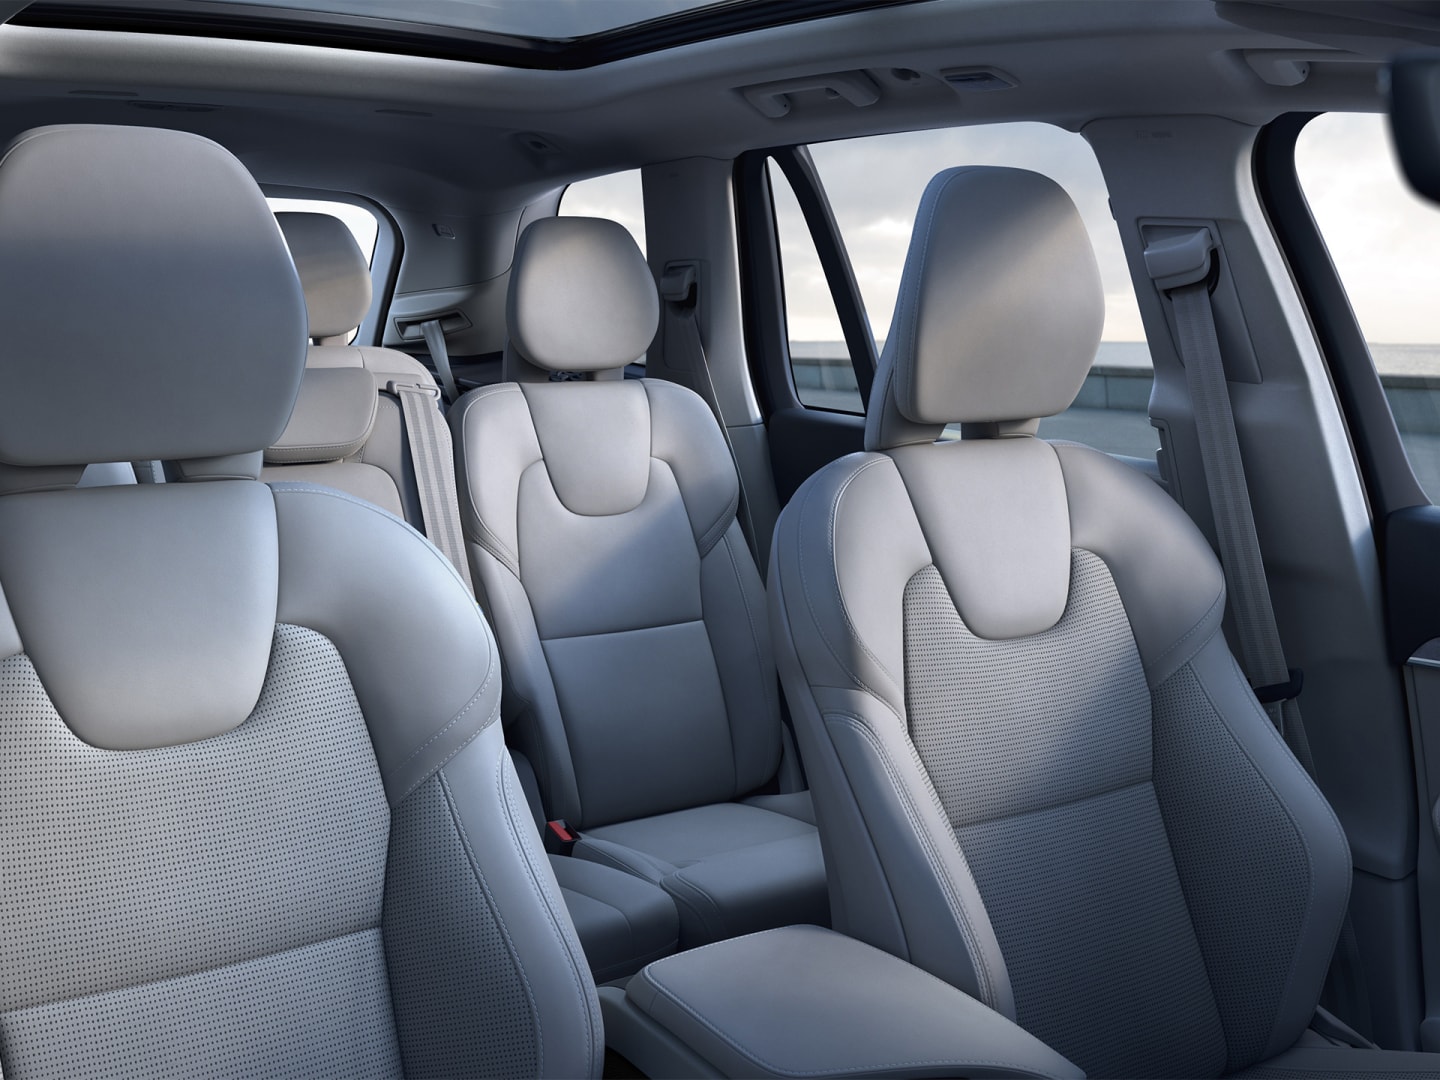 Intérieur spacieux et luxueux de la nouvelle Volvo XC90.